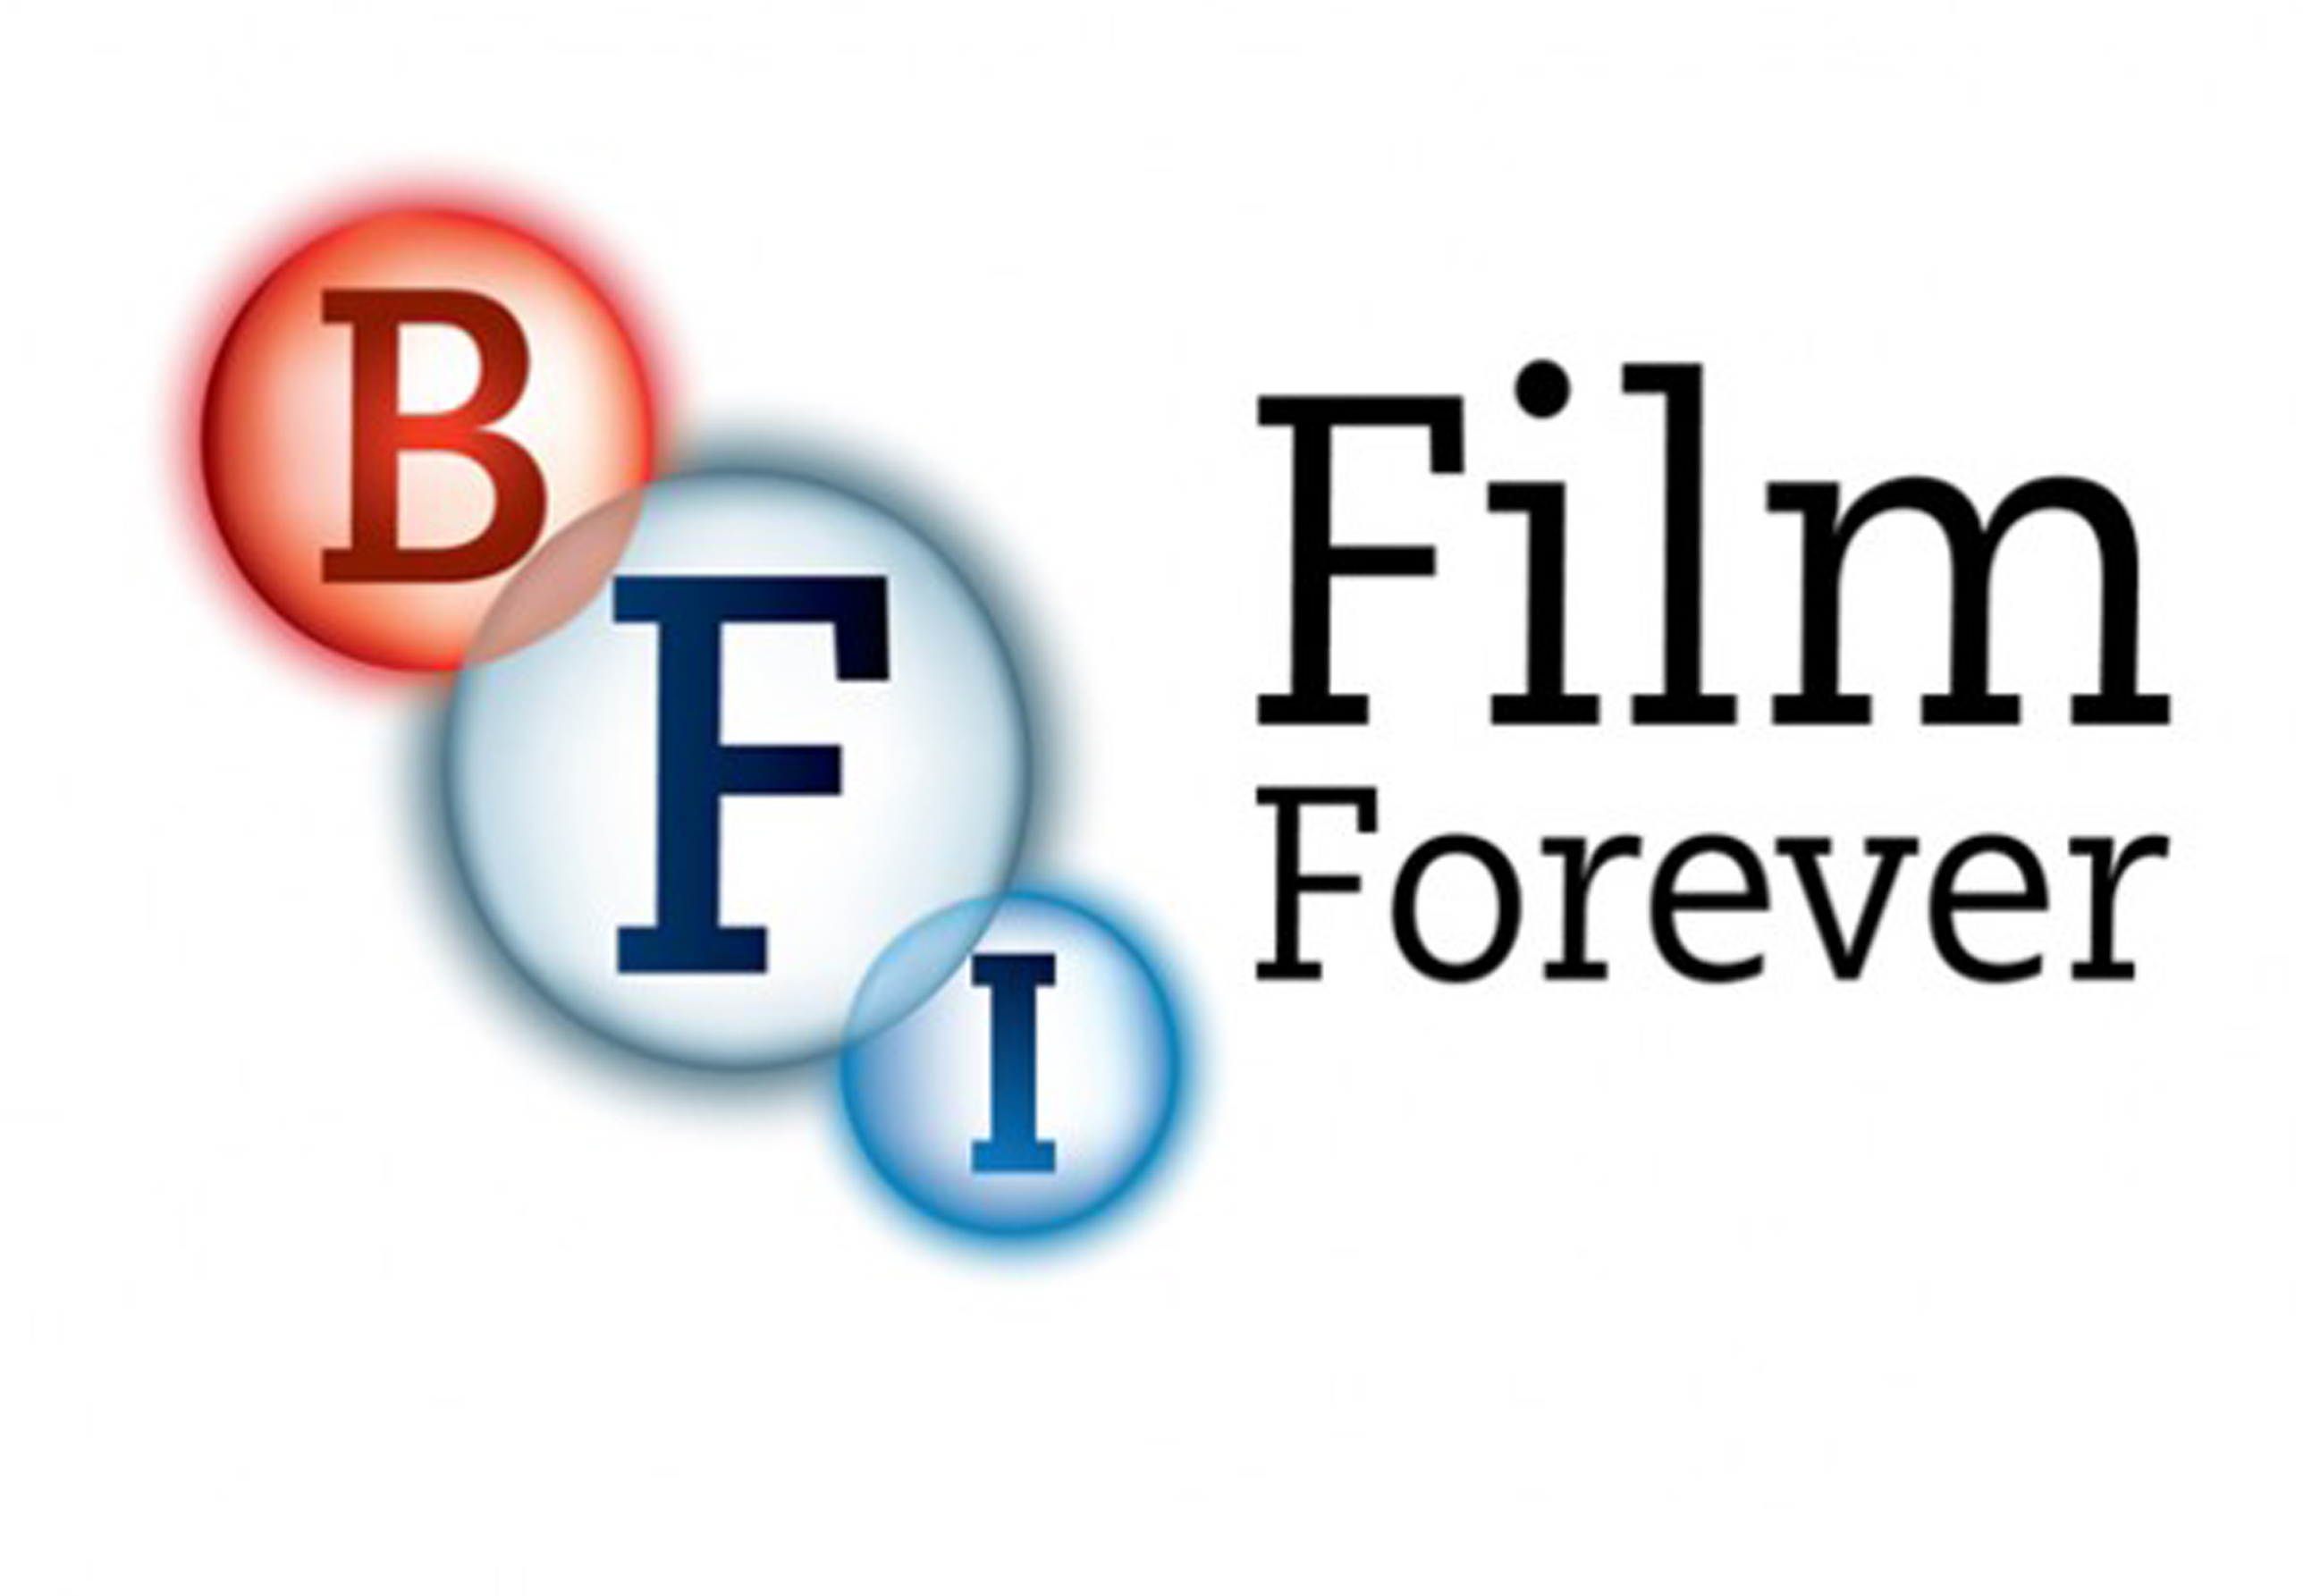 The British Film Institute